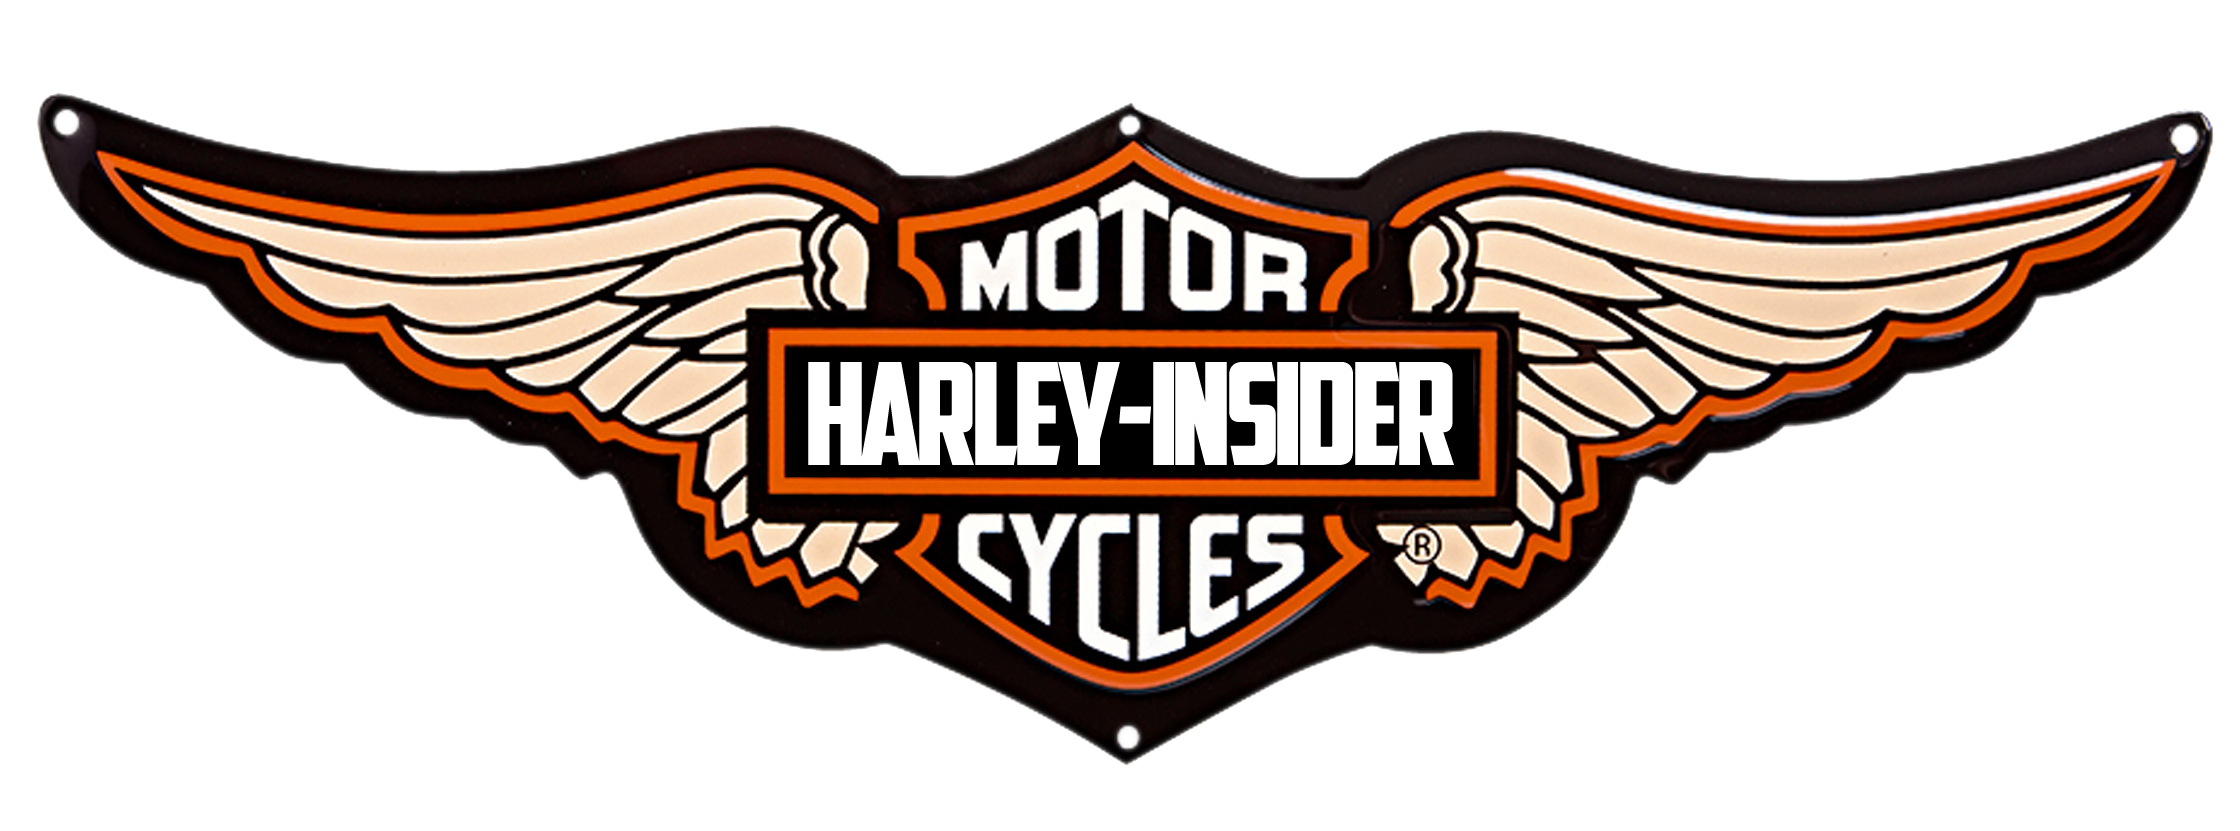 Harley Davidson Motorcycles Logo Free Desktop 8 HD Wallpapers ...